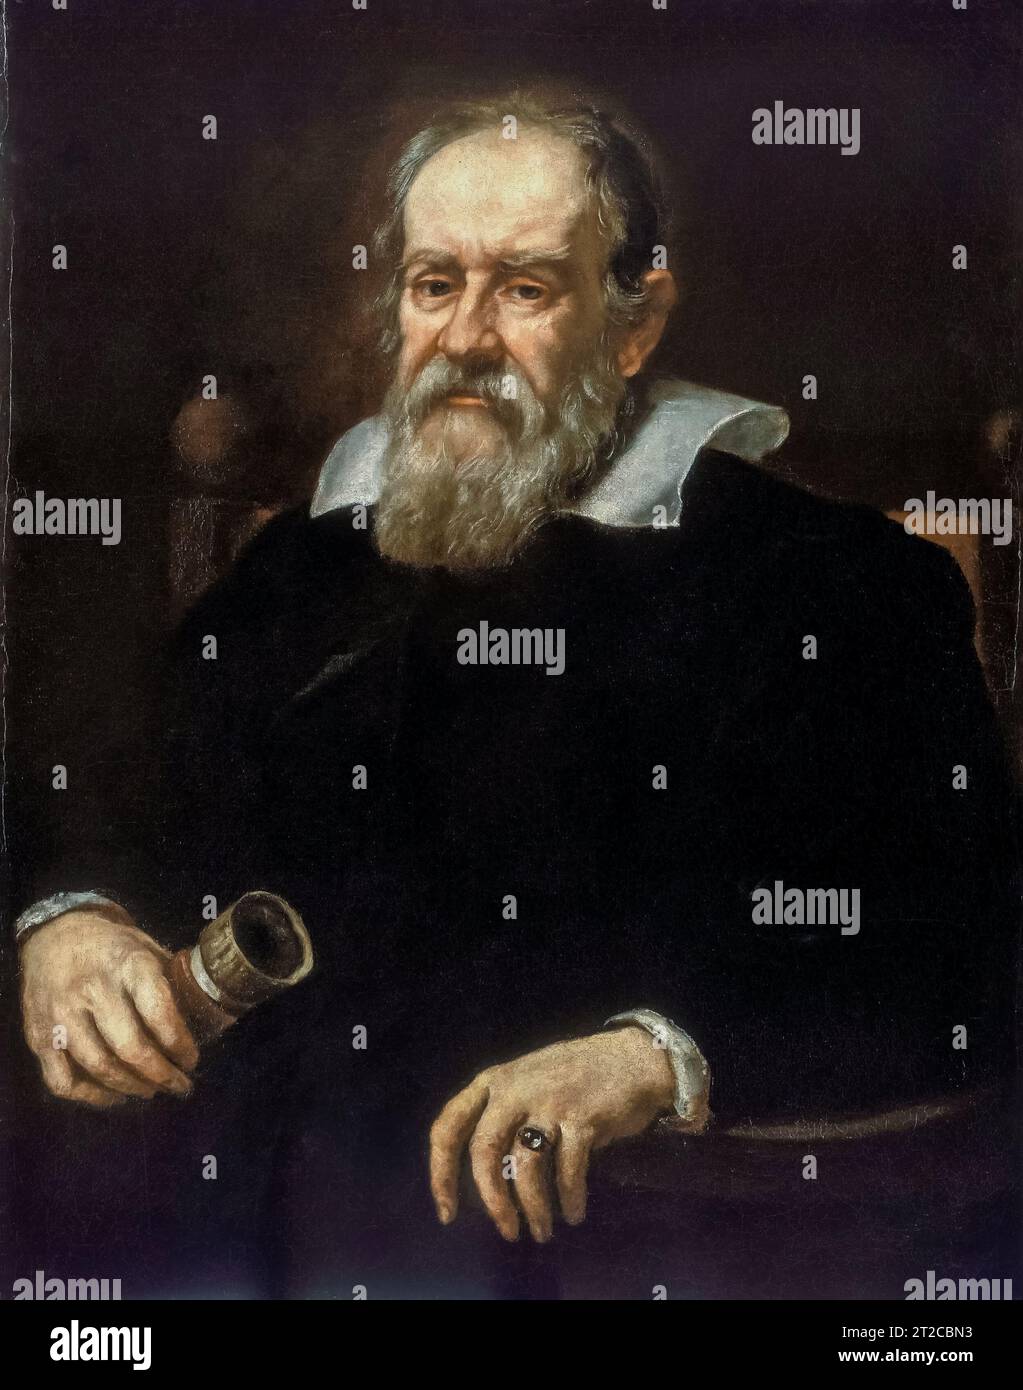 Justus Sustermans, Portrait de Galileo Galilei, 1636, huile sur toile, Royaume-Uni. restauré numériquement Banque D'Images